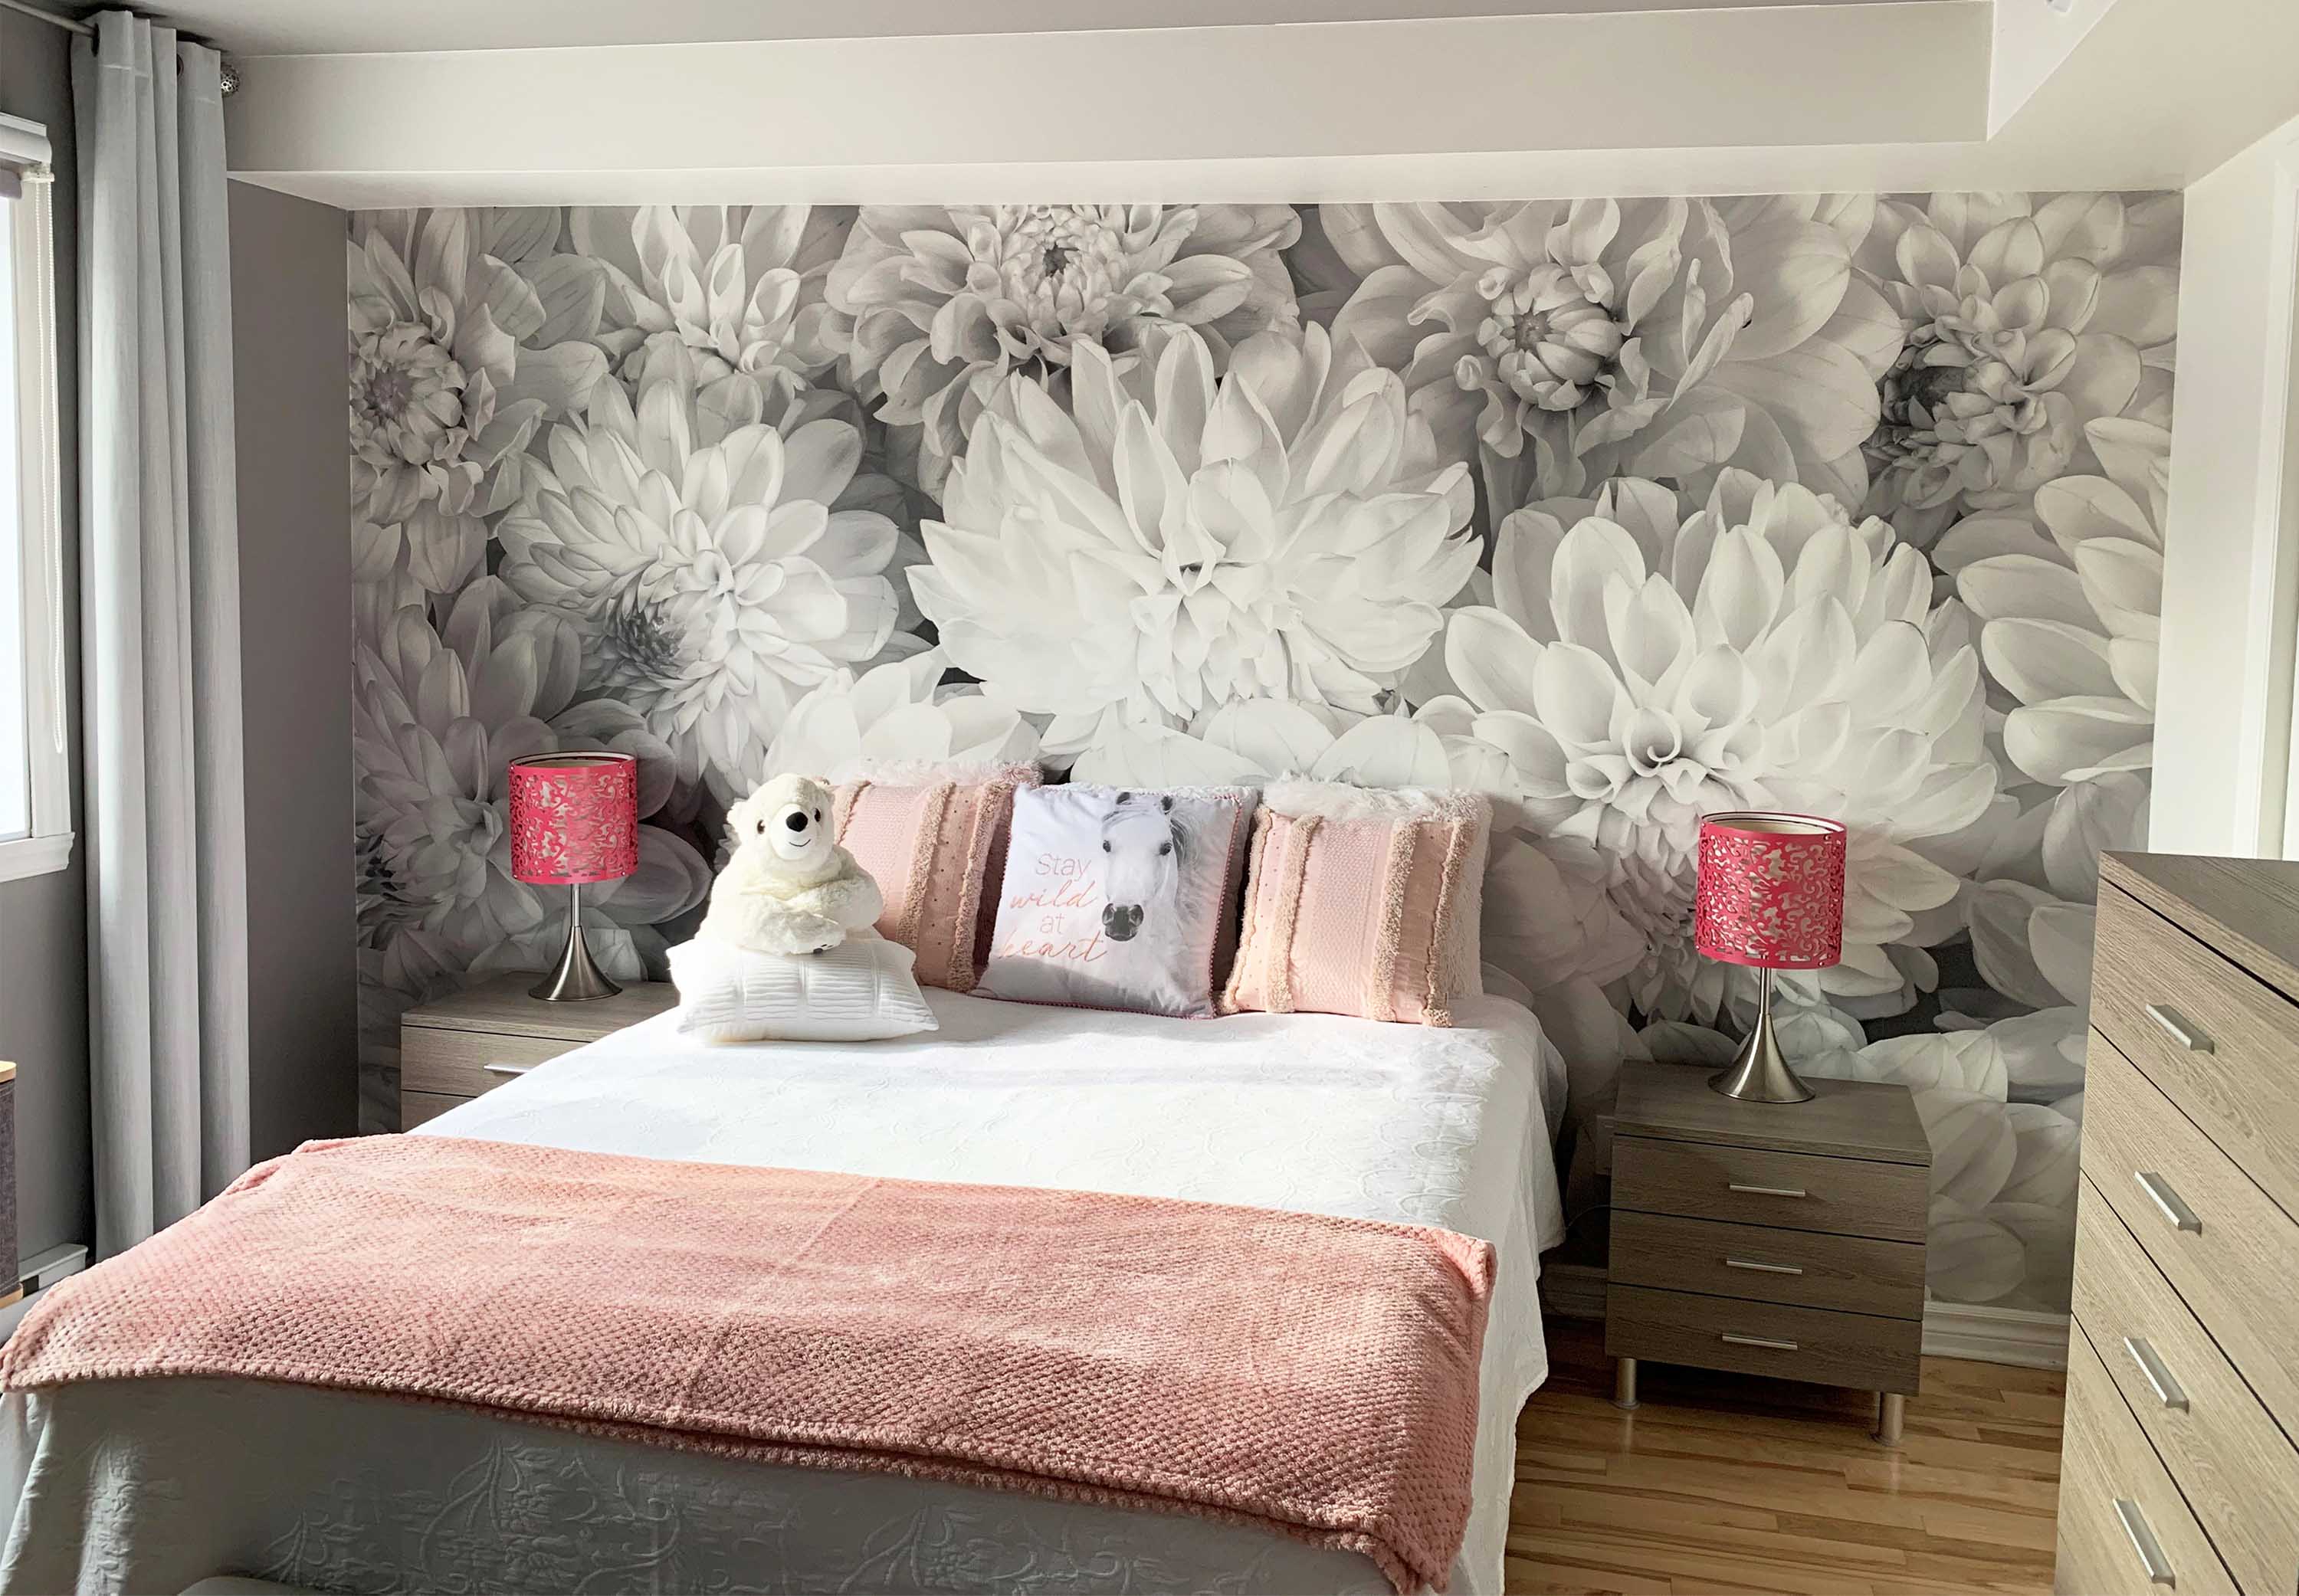 Floral Quilt Set Bedspread Set Dahlia (Full/Queen)